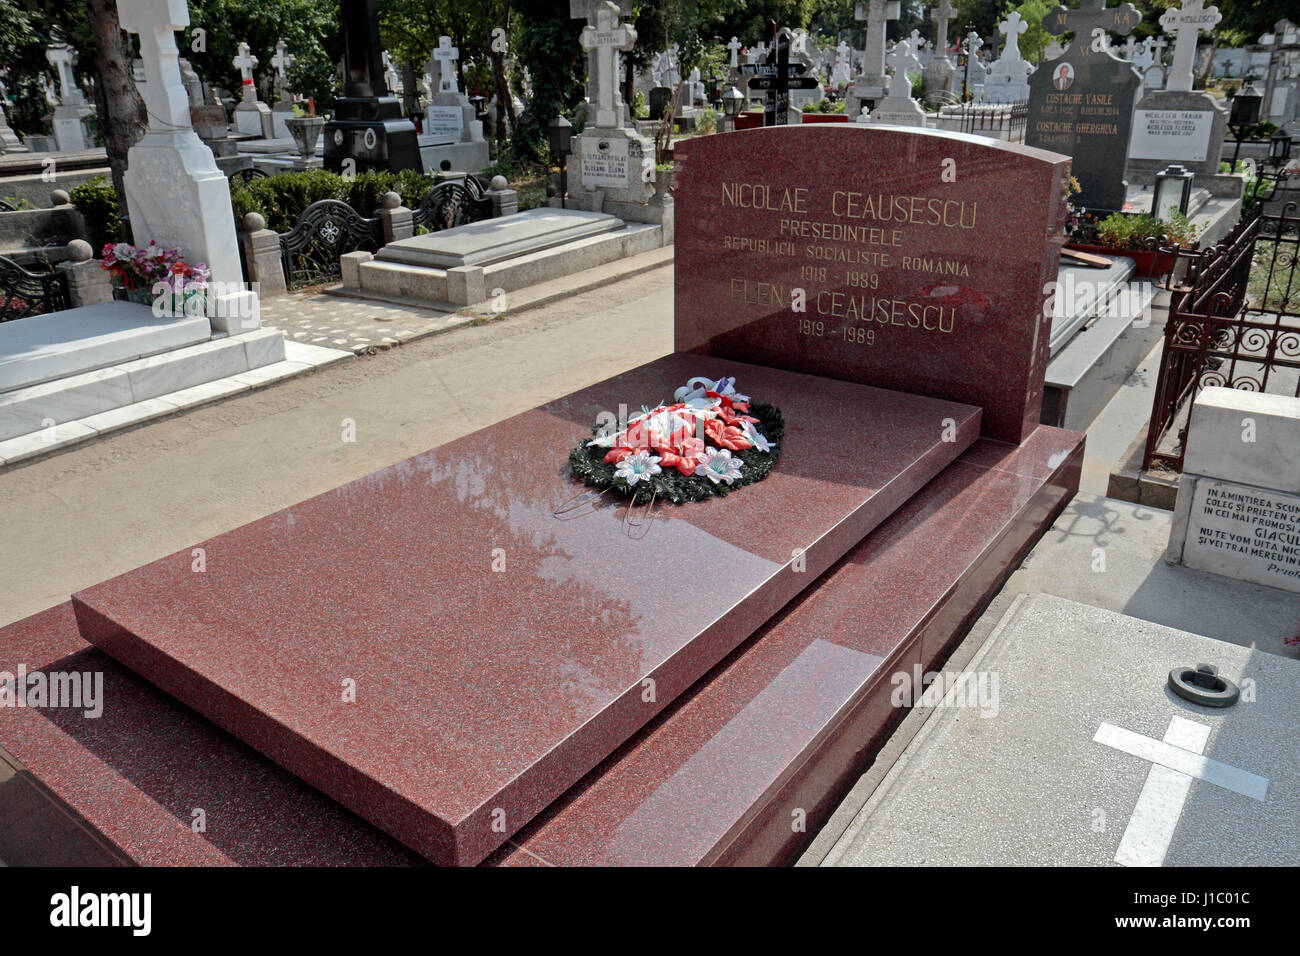 La Tomba comune di Nicolae & Elena Ceausescu, Romania dell ex dittatore durante il periodo comunista, cimitero Ghencea, Bucarest, Romania. Foto Stock